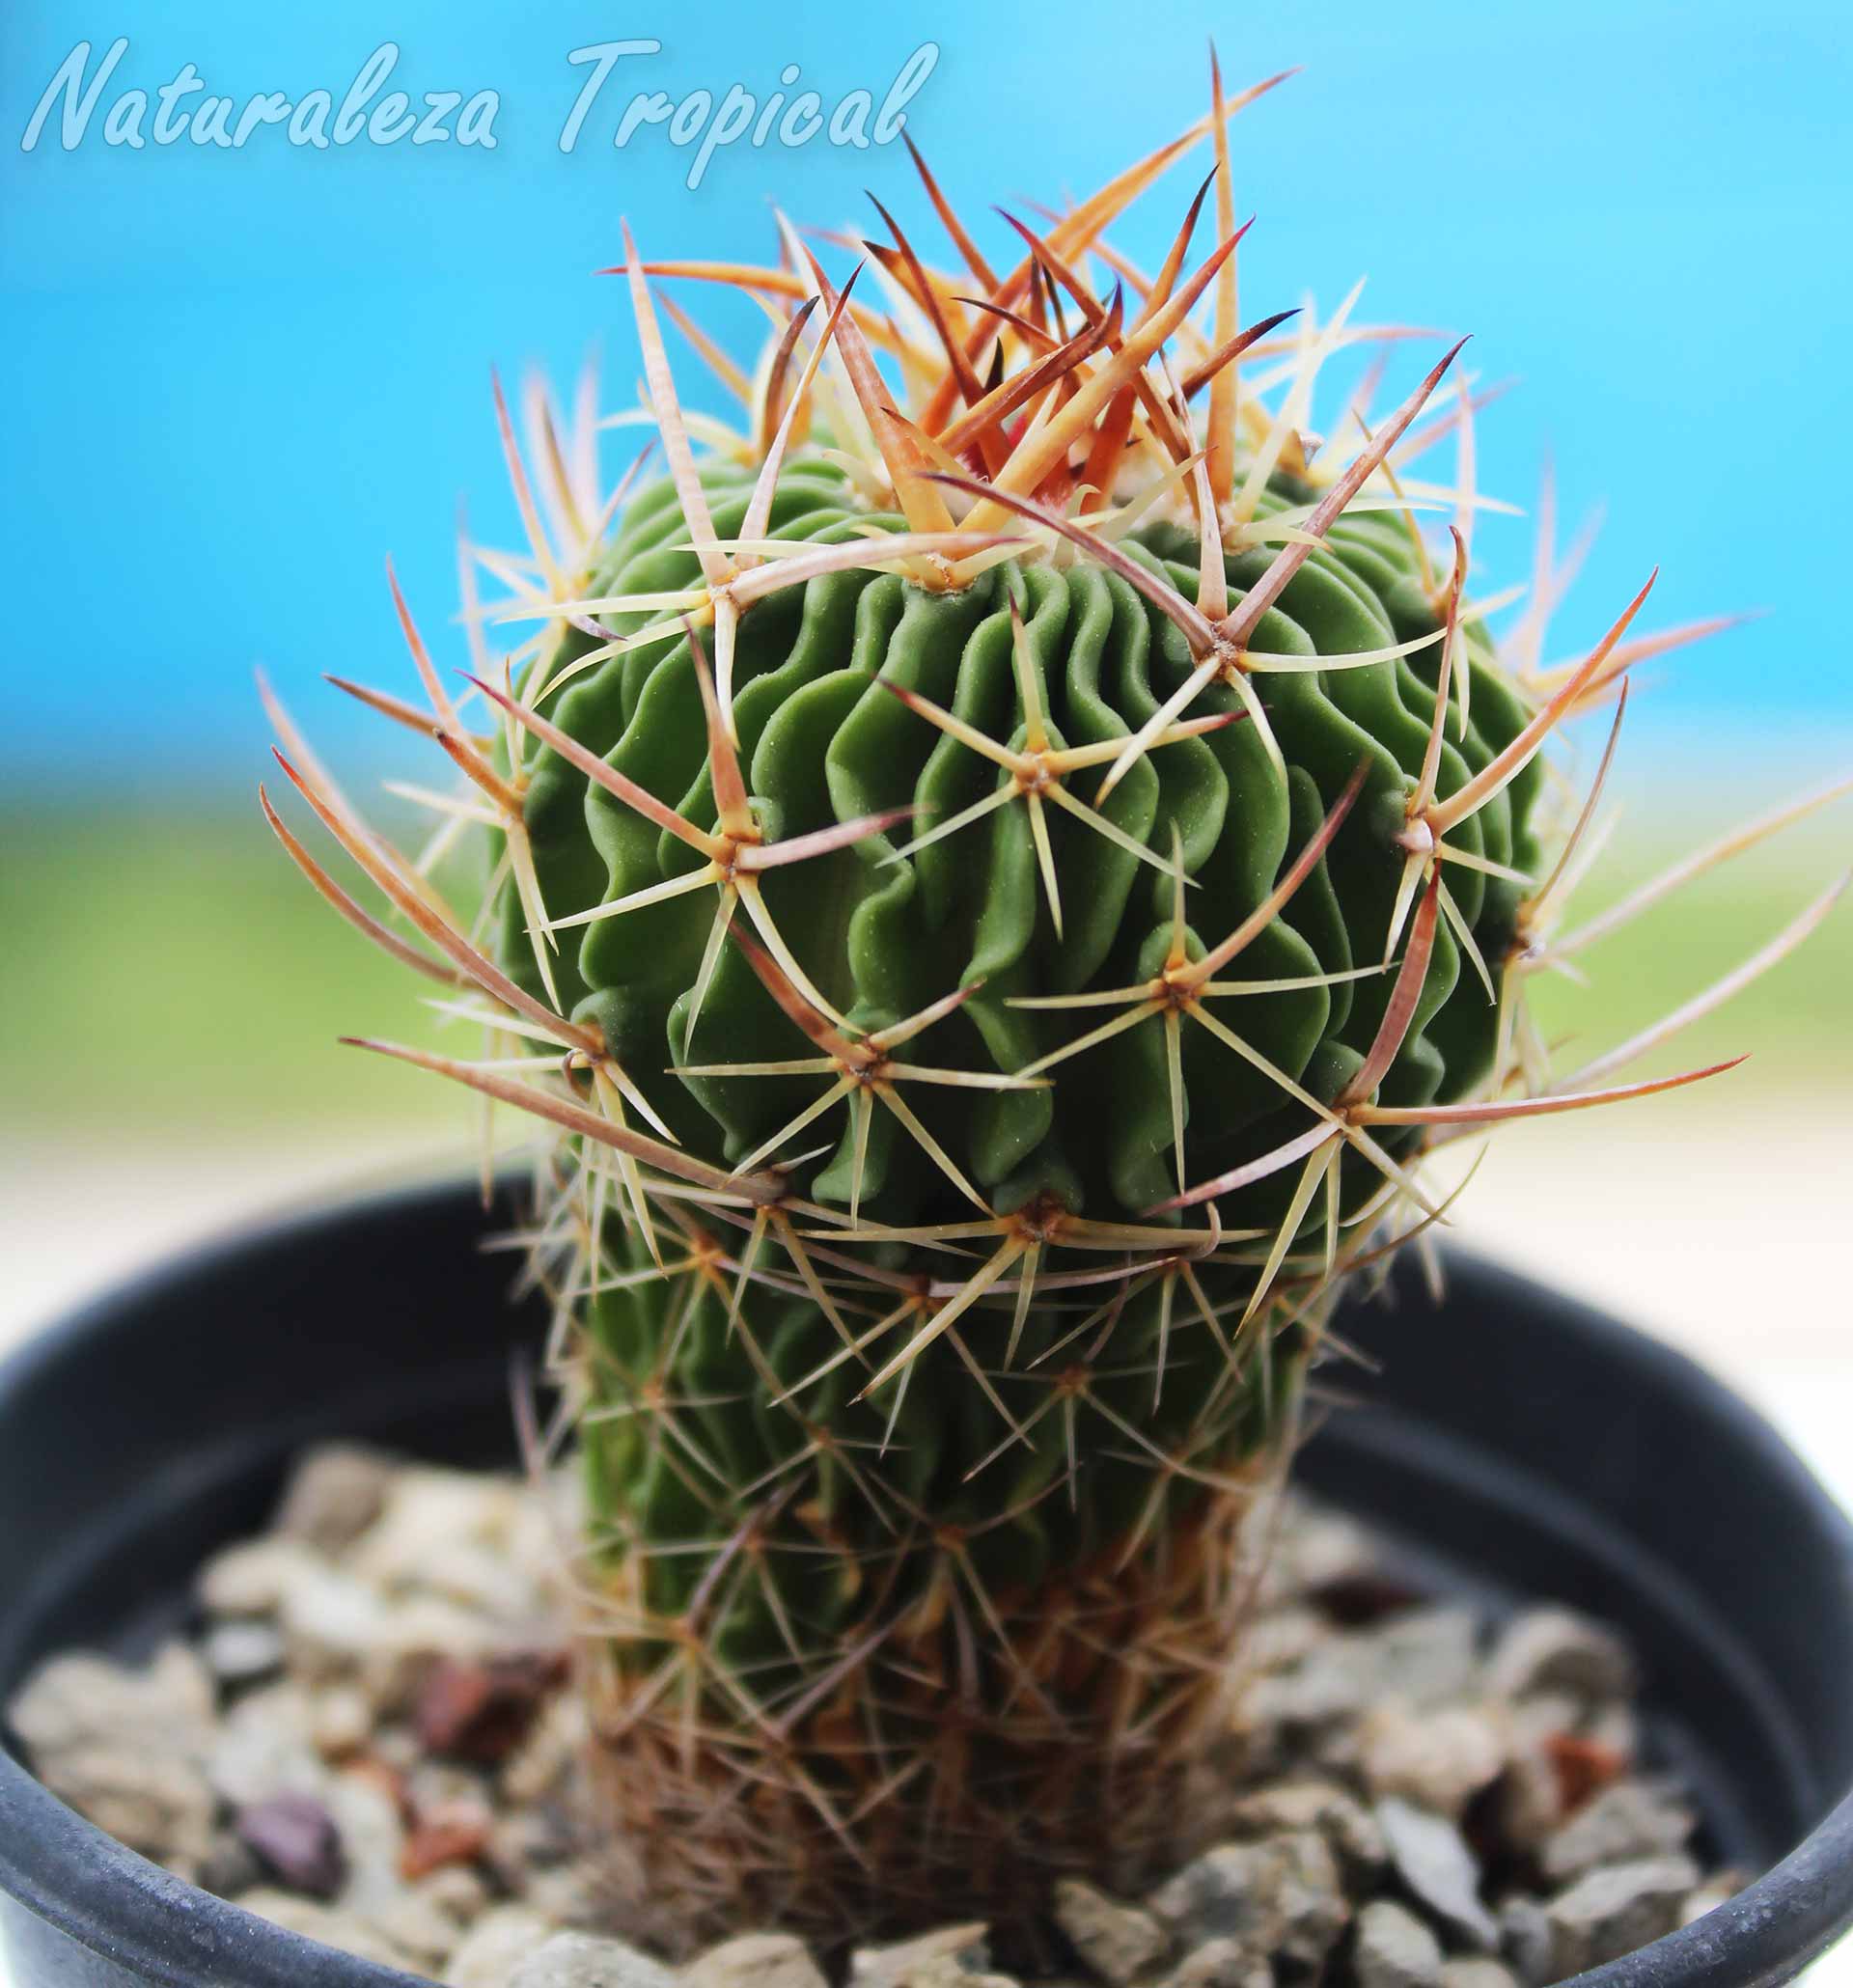 Cactus del género Stenocactus en crecimiento